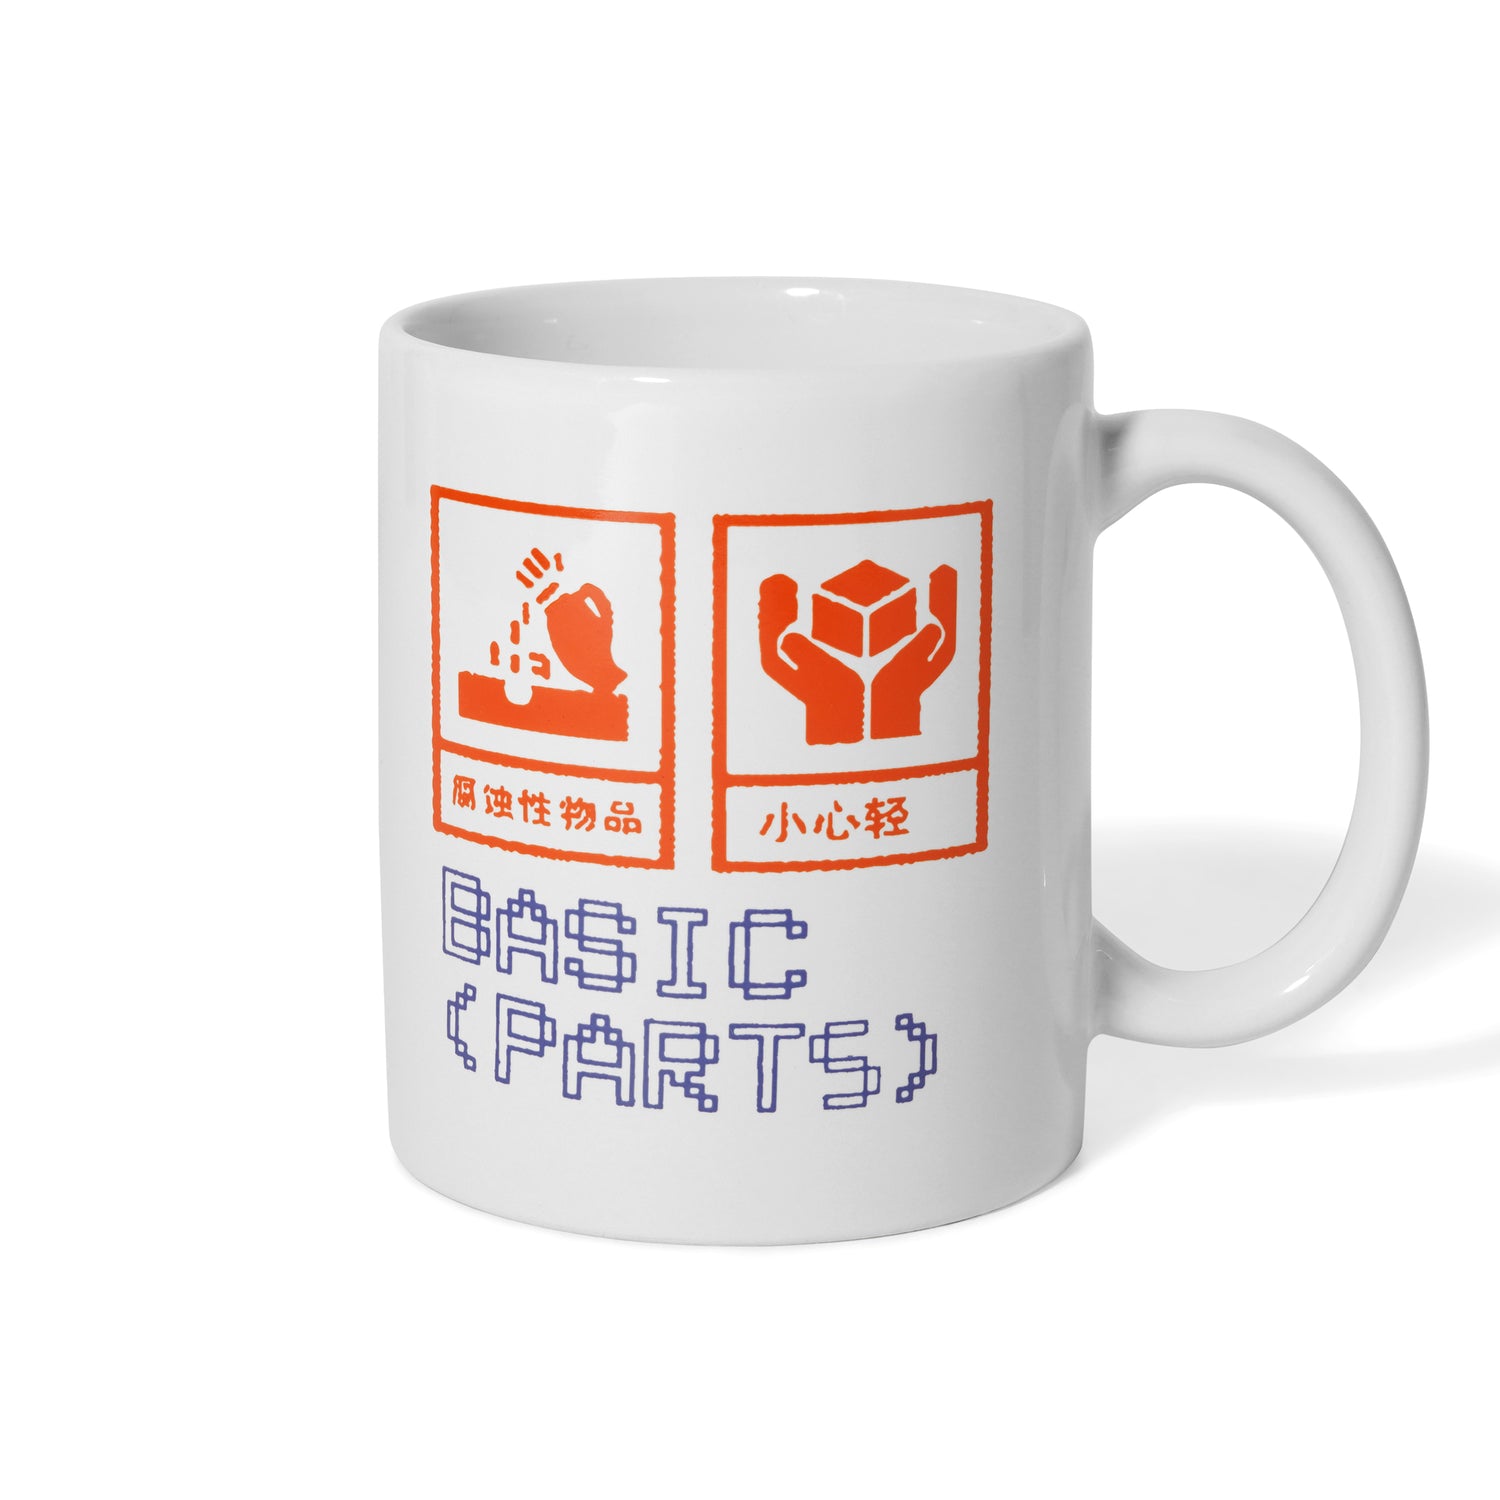 Basic Parts Mug